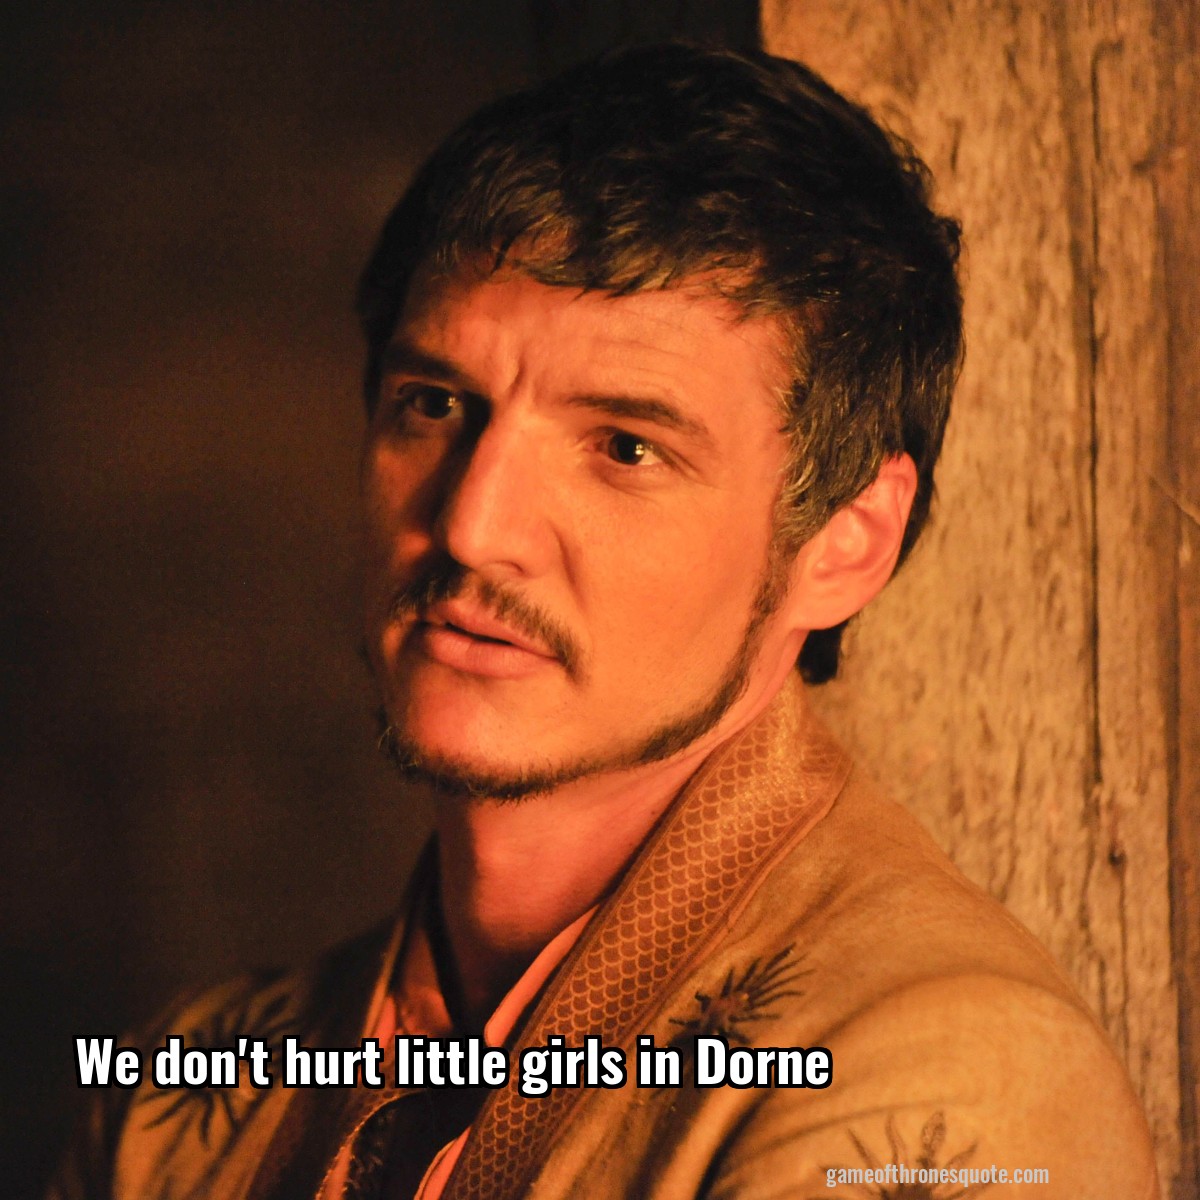 We don't hurt little girls in Dorne